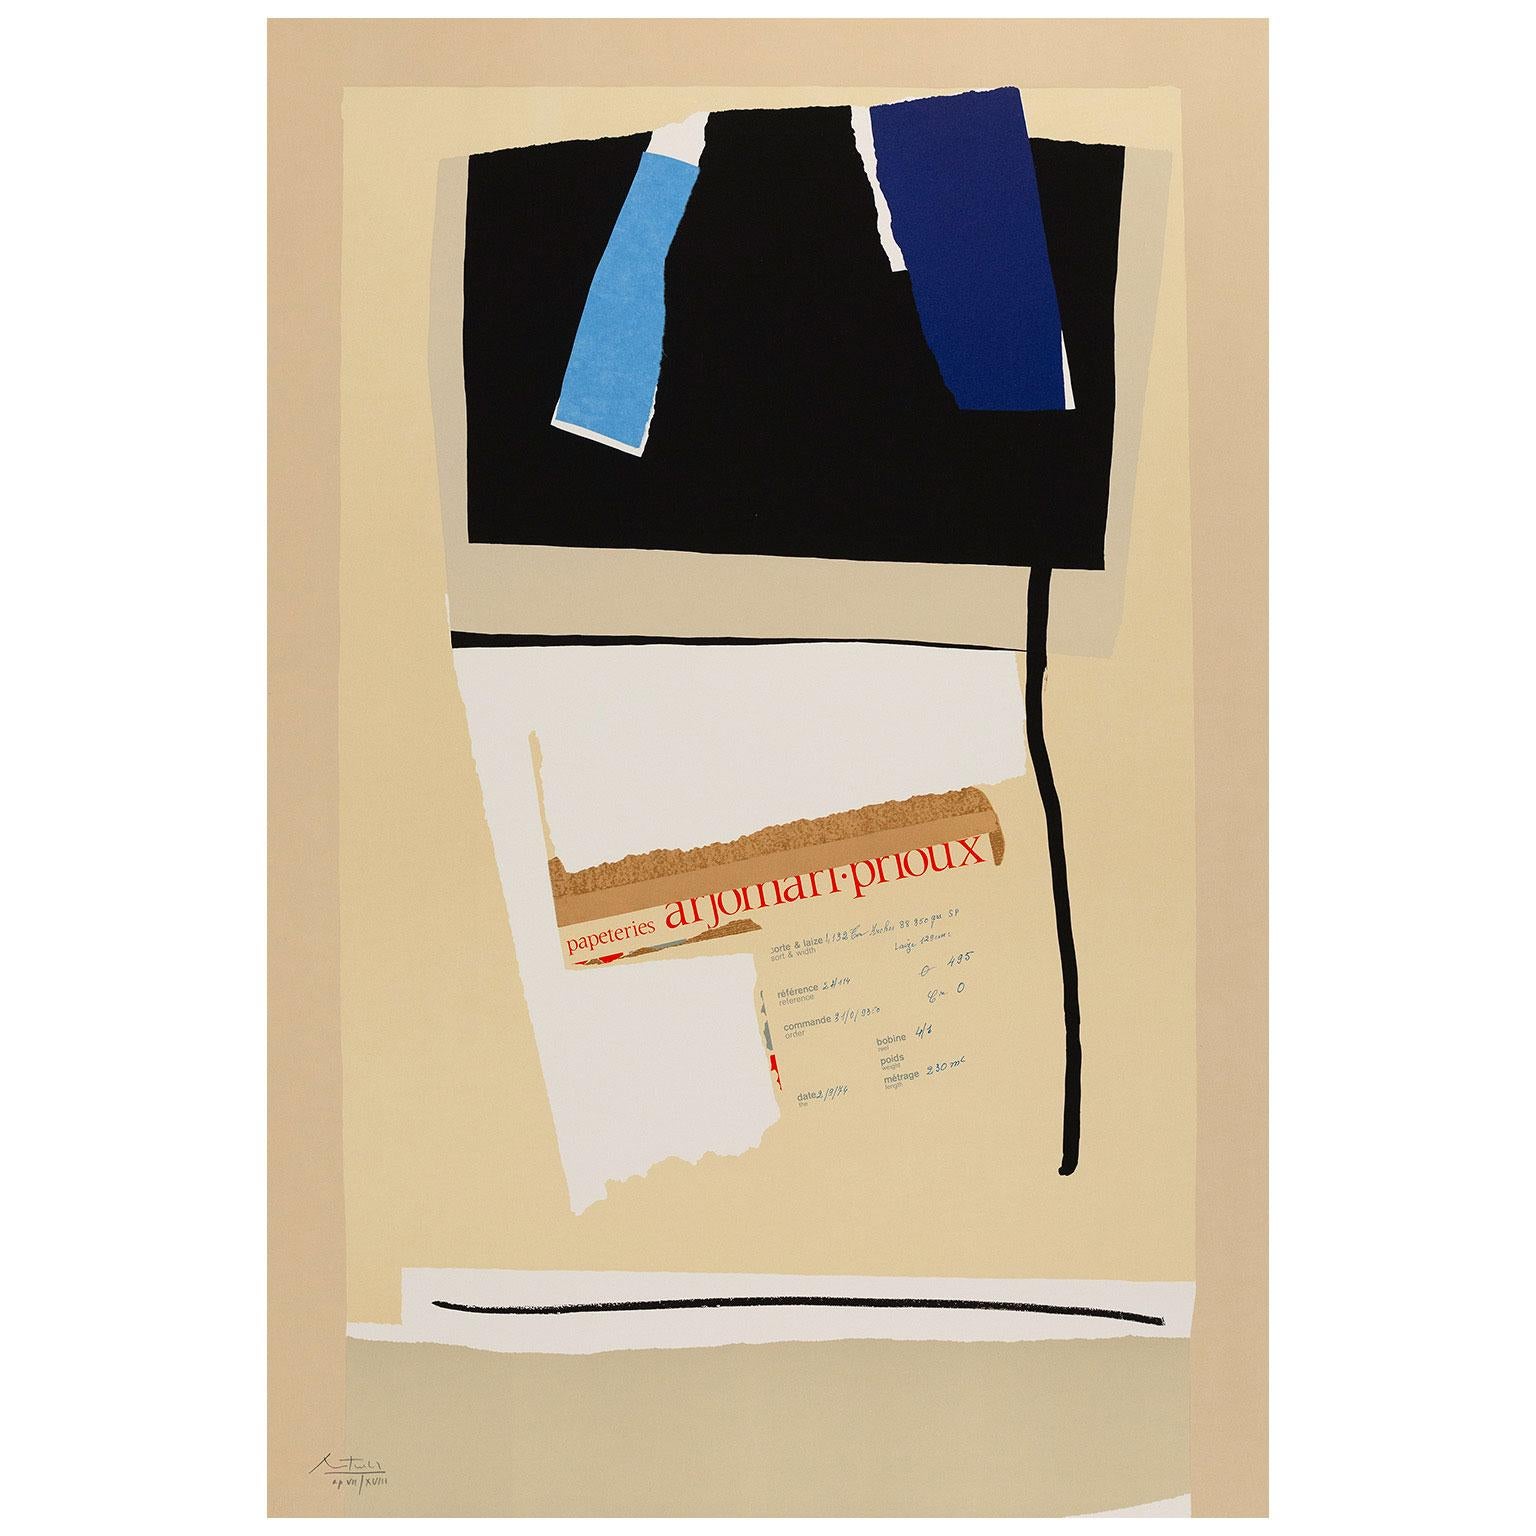 Abstract Print Robert Motherwell - Variations VI Amérique-La France